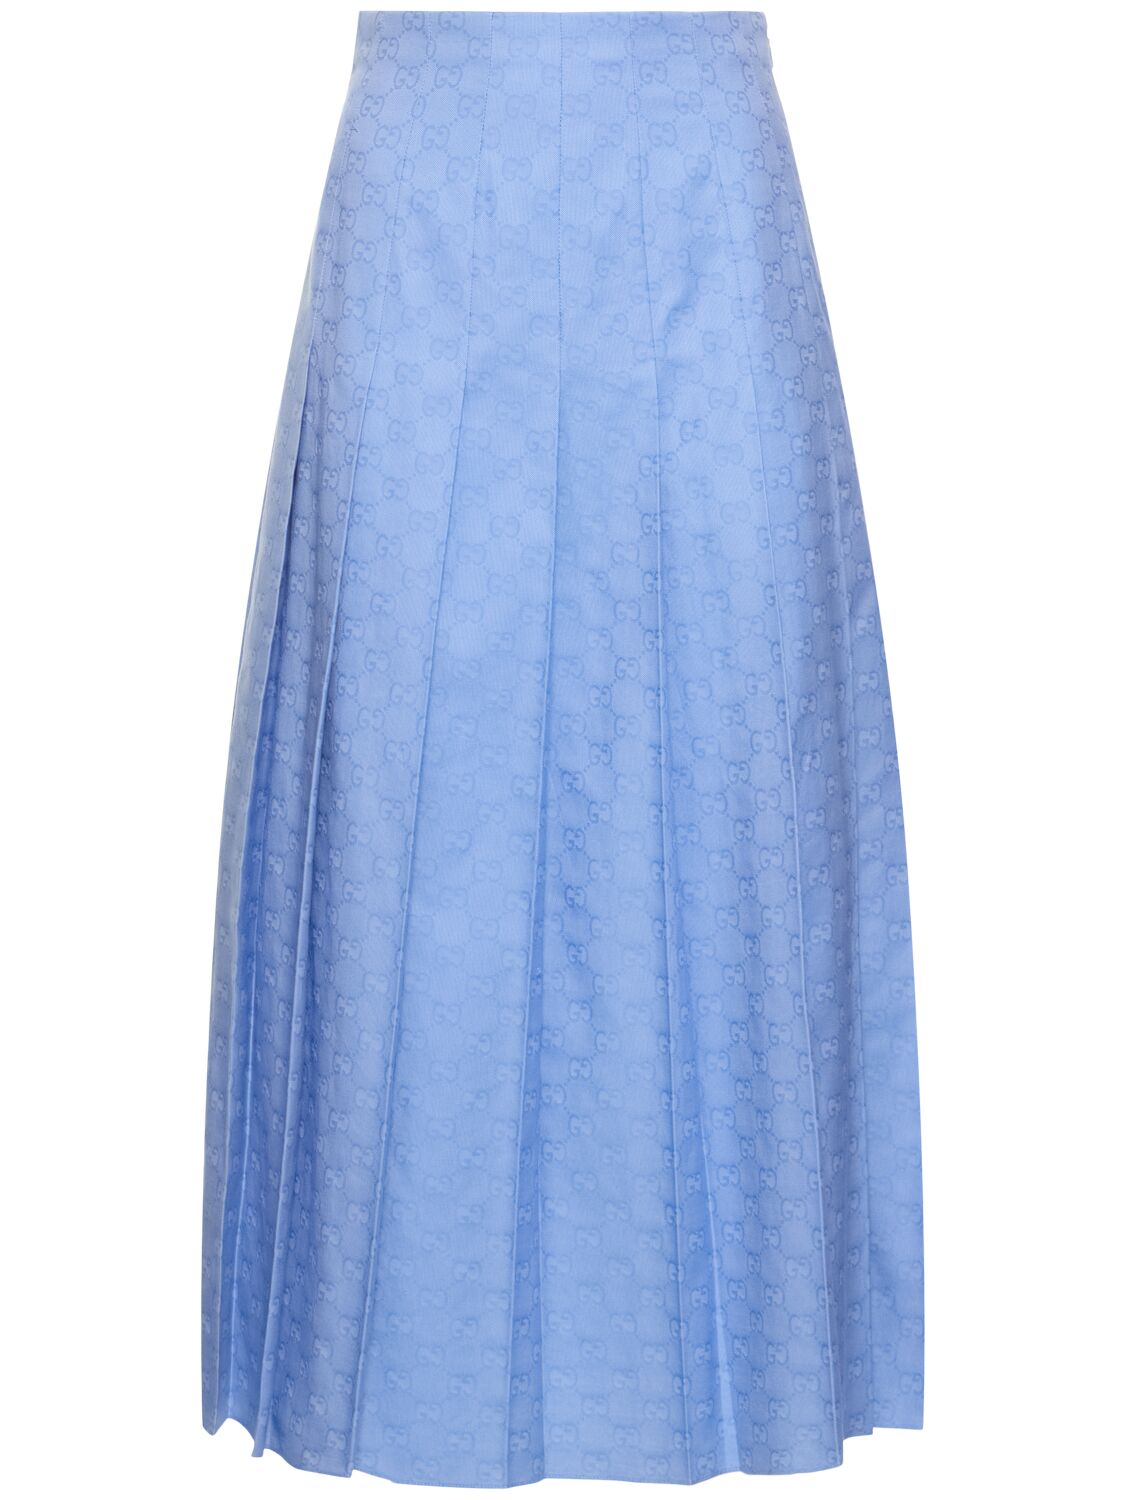 Image of Gg Supreme Cotton Midi Skirt